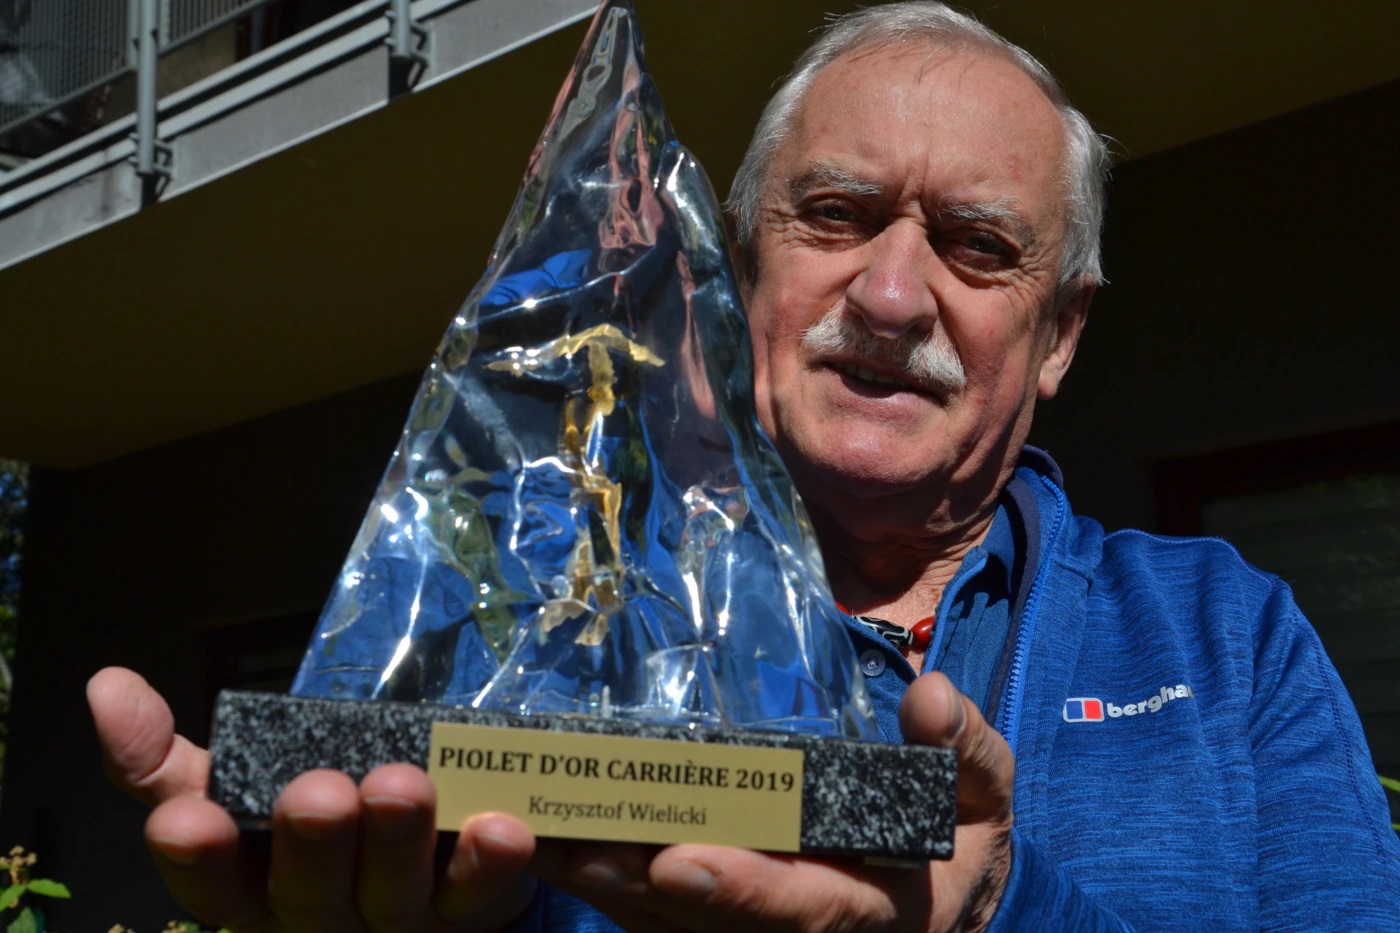 вручение премии "За достижения в течение жизни" (Lifetime Achievement Award). величайшему польскому альпинисту Кшиштофу Велицкому (Krzysztof Wielicki)